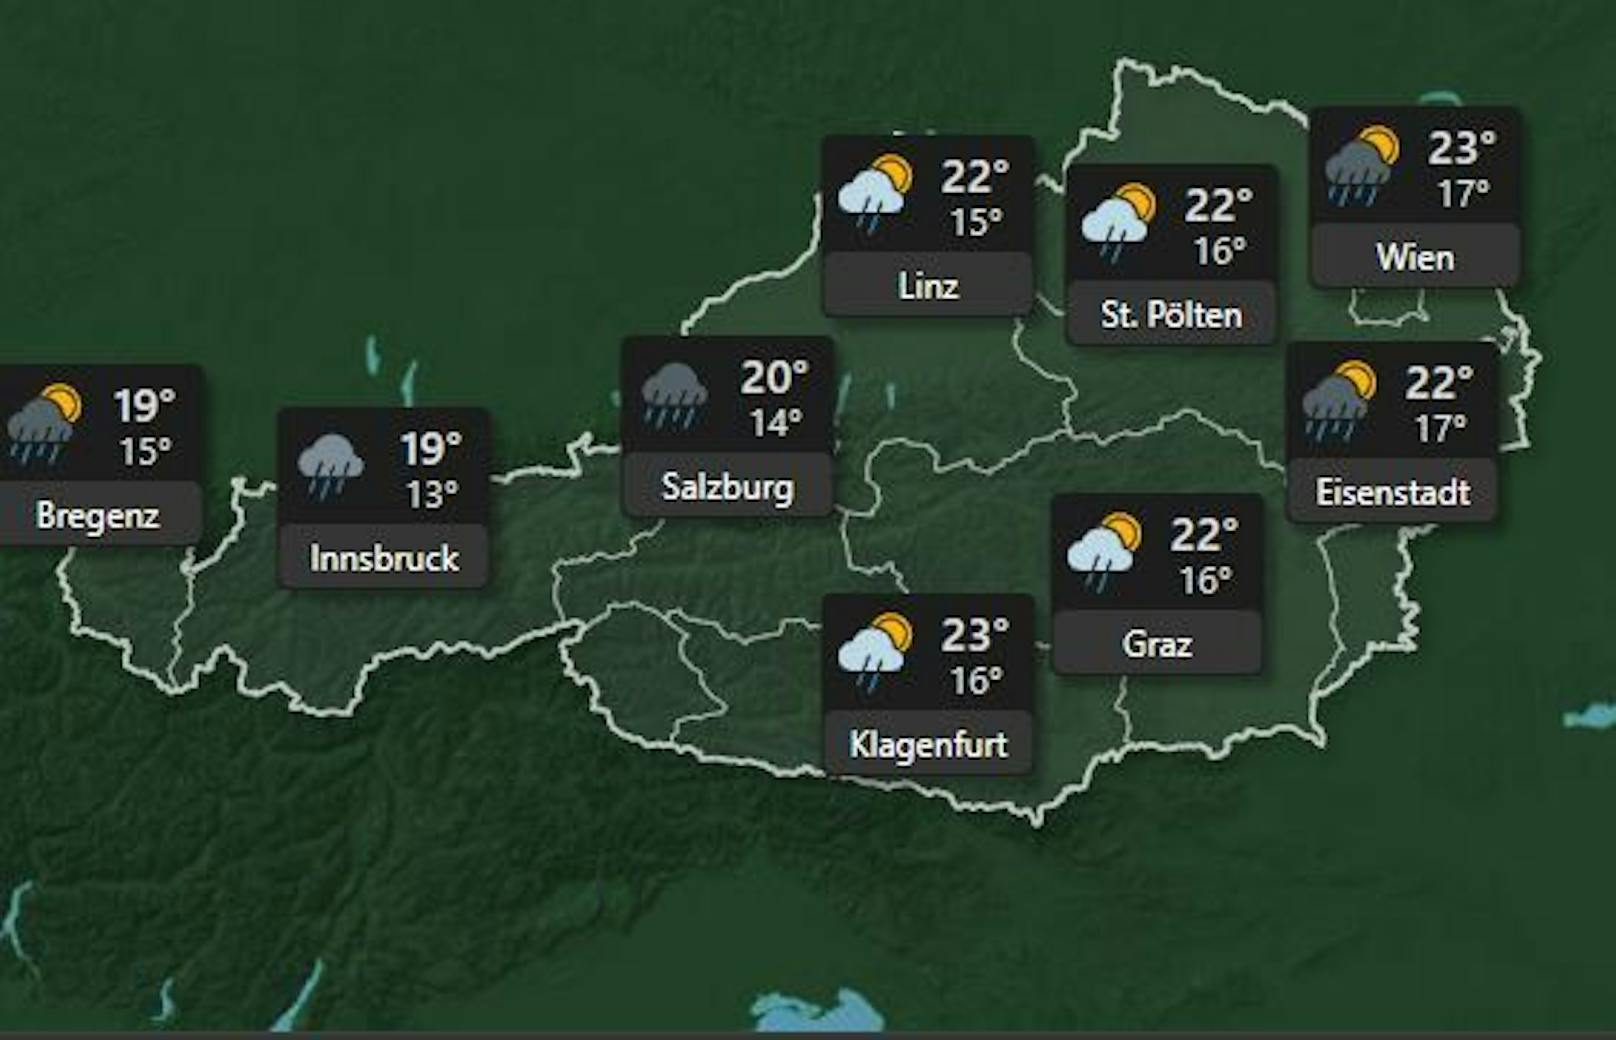 <strong>Mittwoch 6. Juli:</strong> Die Hitze geht am Mittwoch vorüber, die <strong>Temperaturen fallen</strong> in ganz Österreich auf maximal 23 Grad. Heftige Regenschauer in Innsbruck und Salzburg zu erwarten. In Wien steigt die Temperatur nur noch auf maximal <strong>23 Grad.</strong>